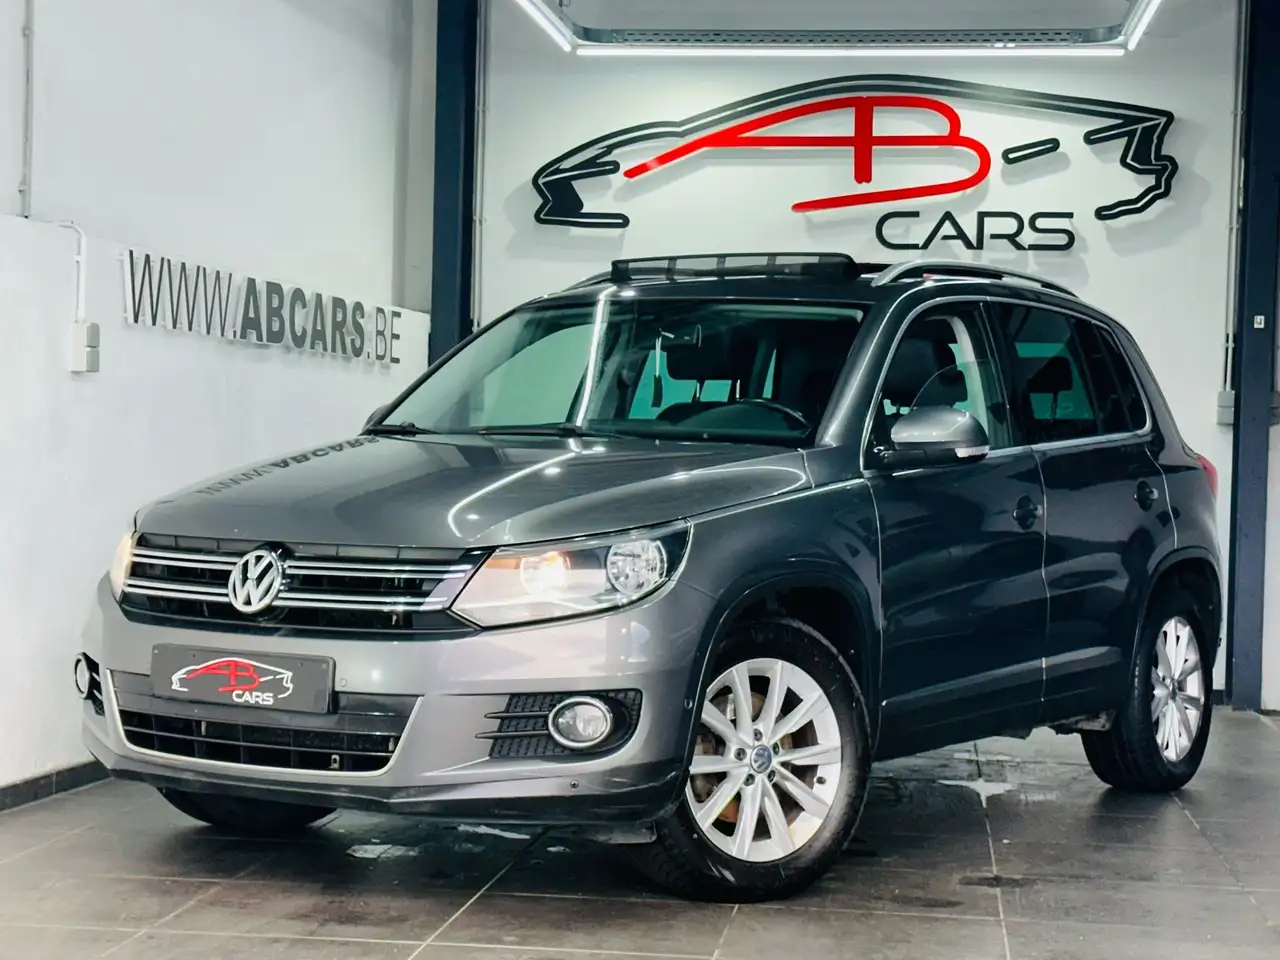 Volkswagen Tiguan SUV/4x4/Pick-up in Grijs demo in Herstal voor € 11.490,-